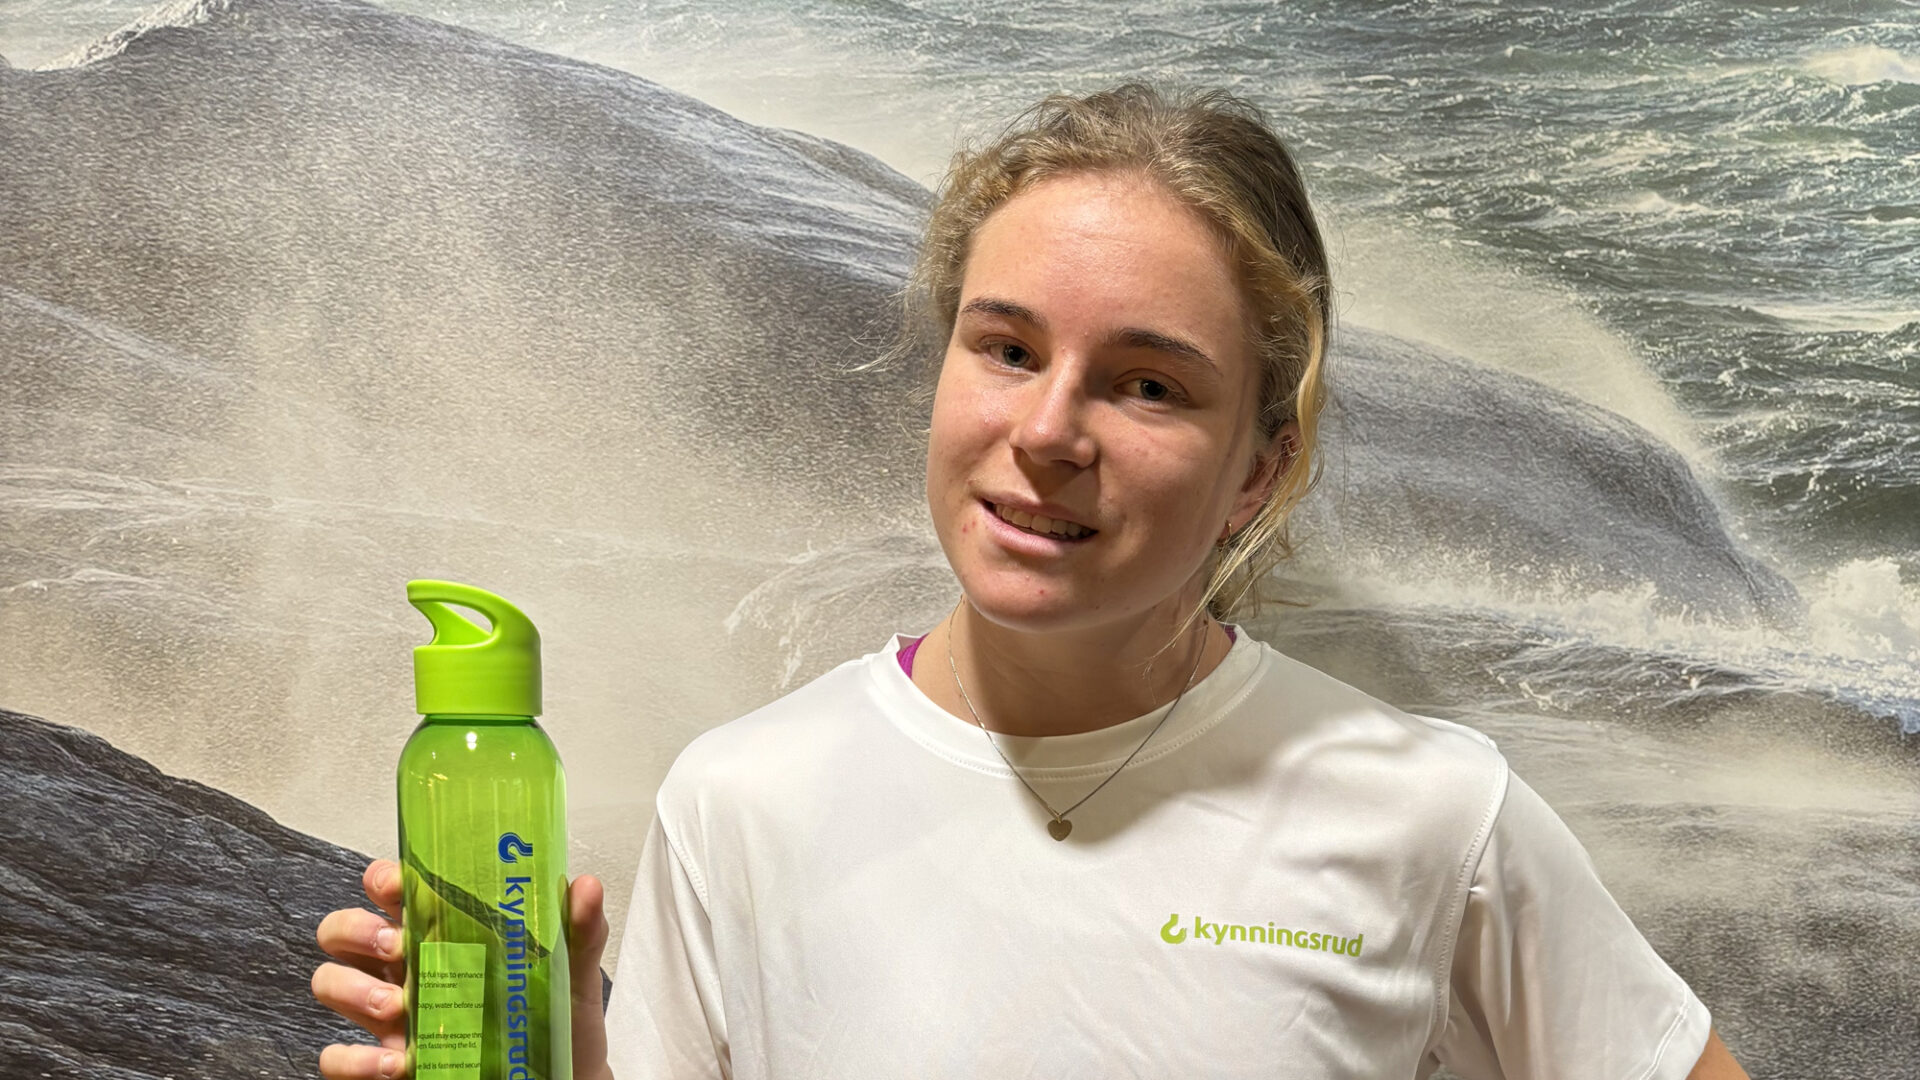 Ung kvinne i hvit t-shirt som er dyktig i friidrett poserer foran et bilde av havet og med en grønn drikkeflaske i hånda.